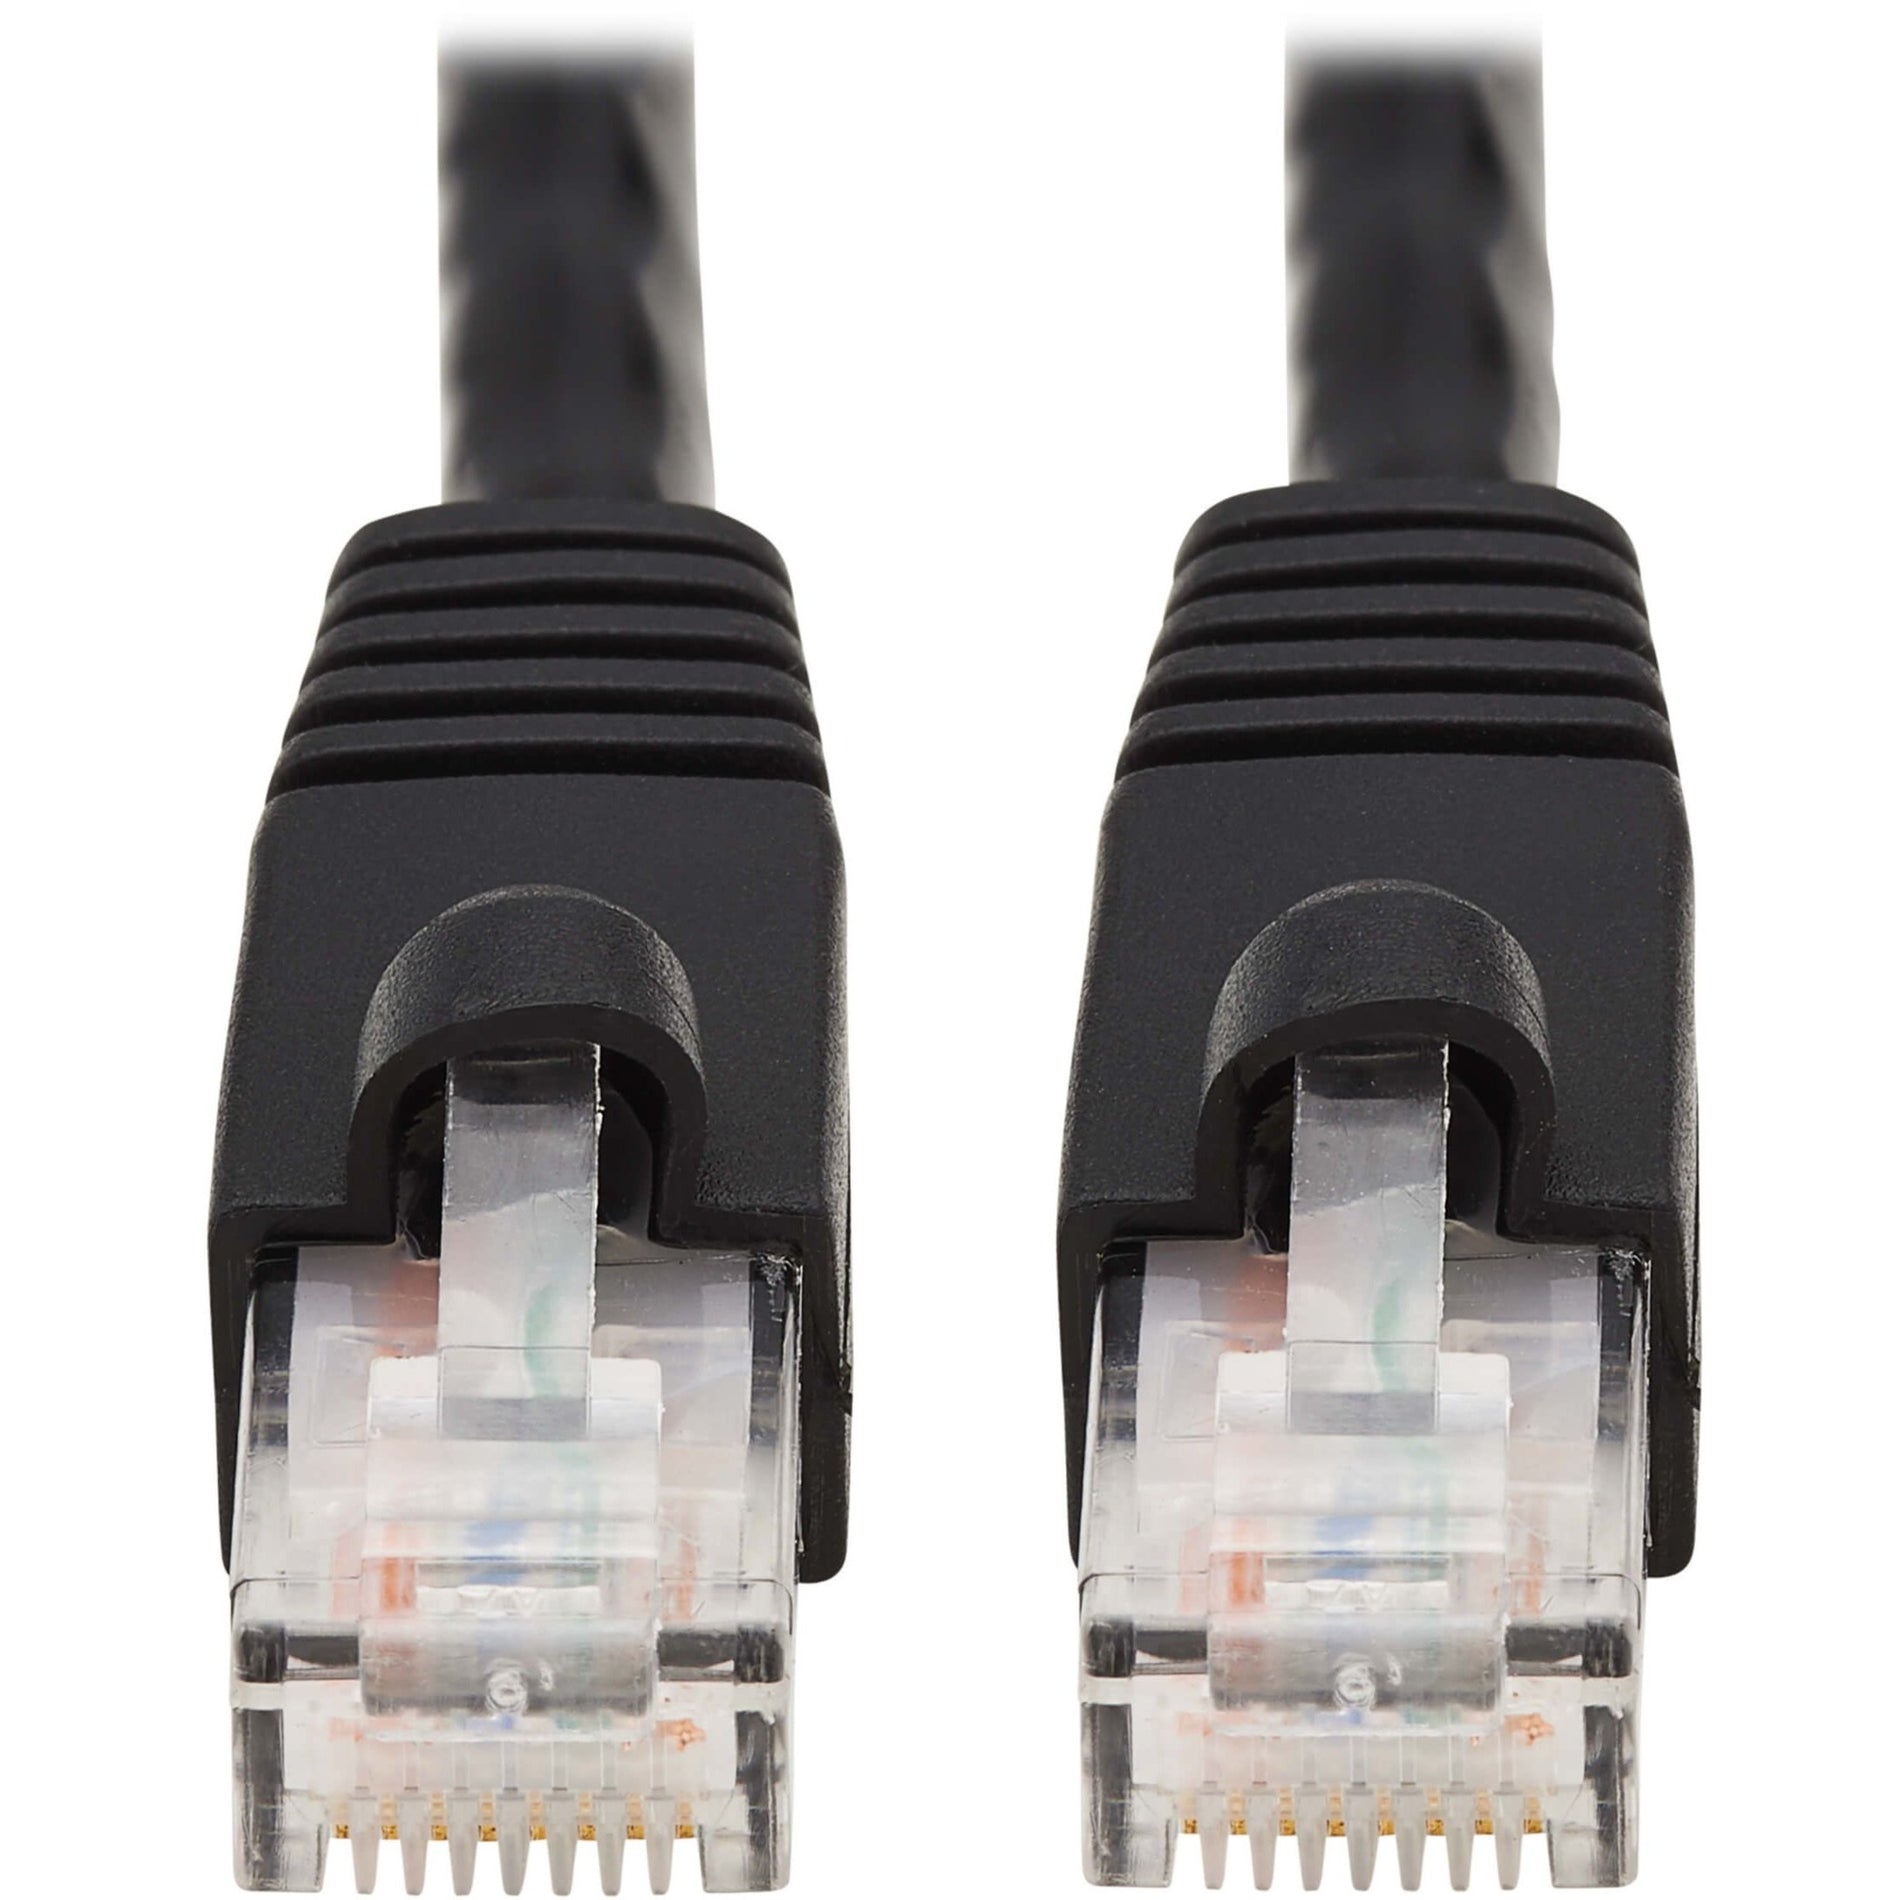 Tripp Lite N261-014-BK Cat.6a Patch Network Cable, 14 ft, 10 Gbit/s, RJ-45 Male Connectors, Black